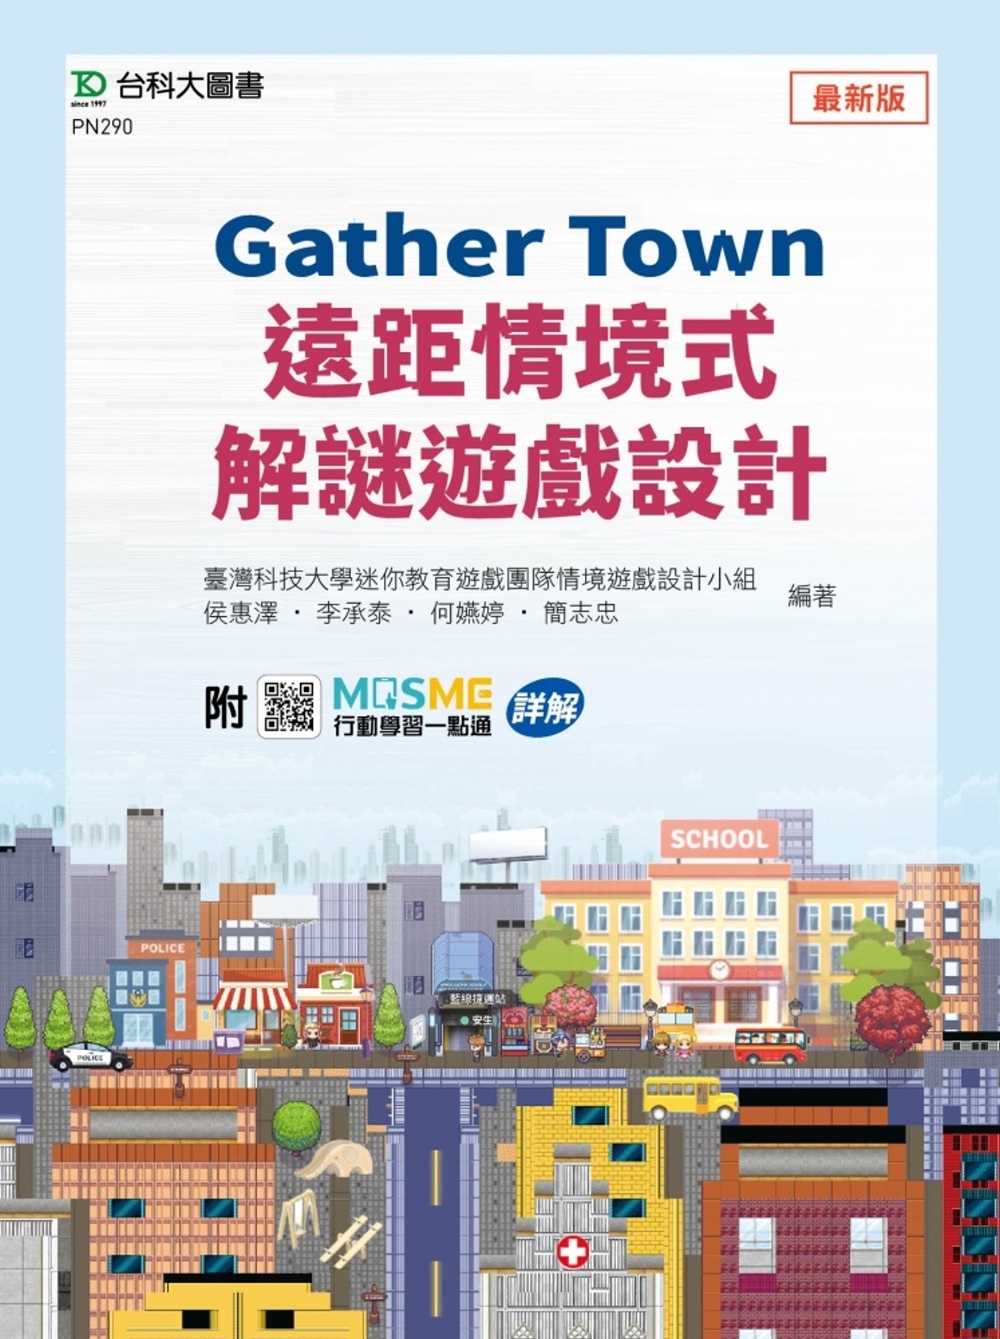 Gather Town遠距情境式解謎遊戲設計 - 附MOSM...